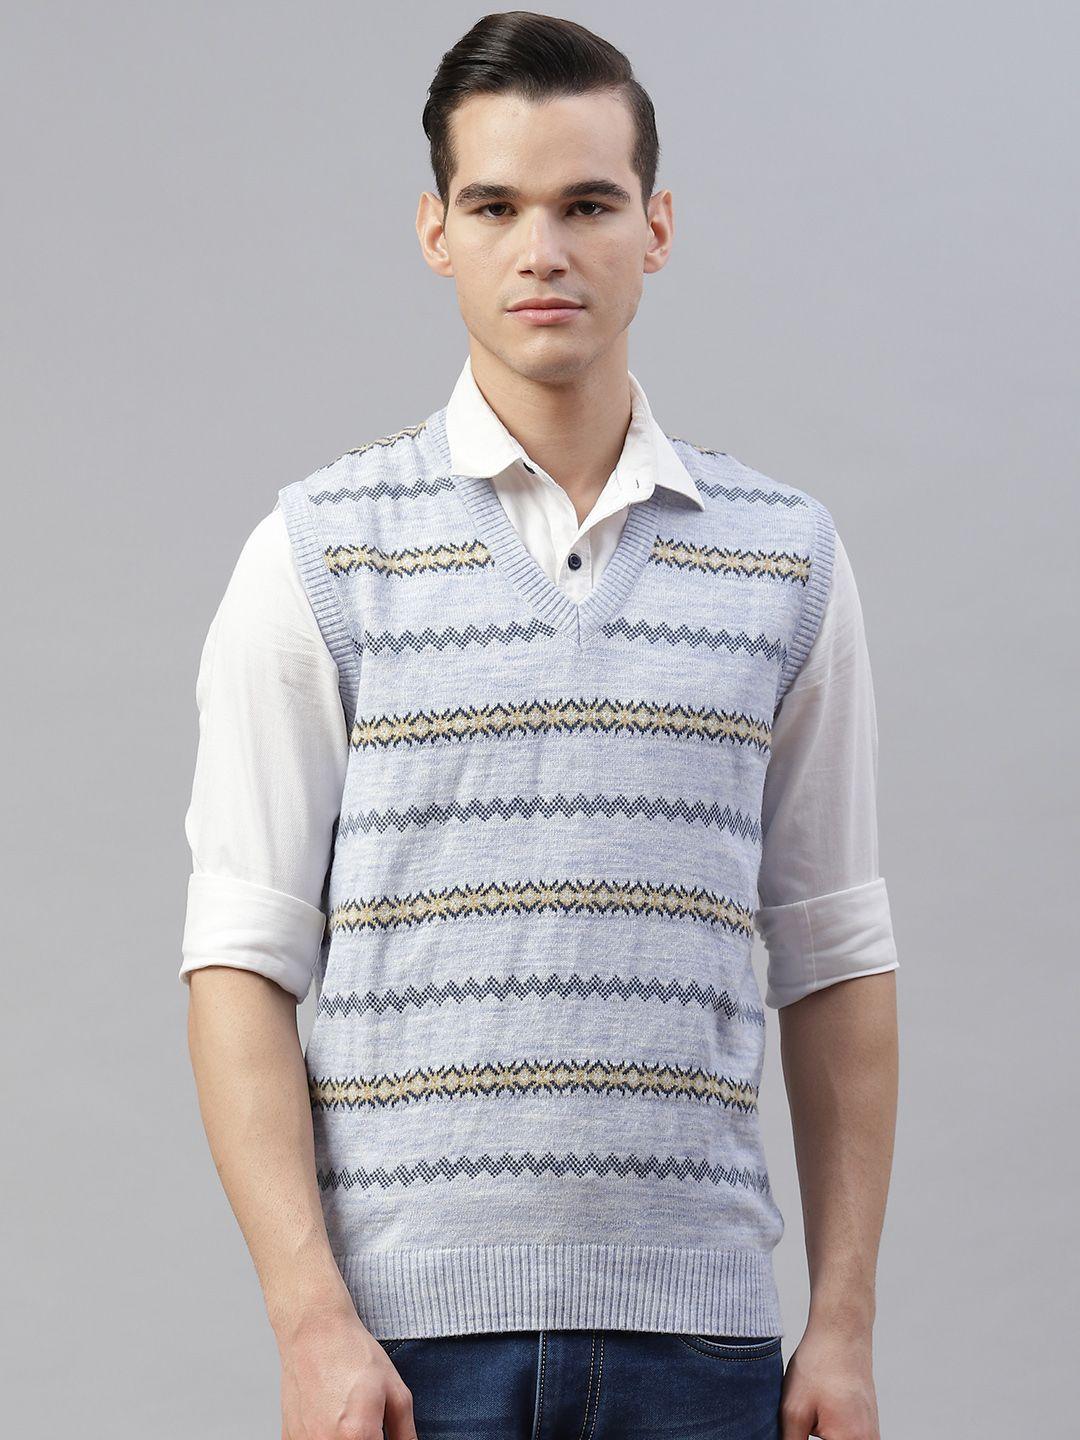 pierre carlo men turquoise blue & beige striped sweater vest